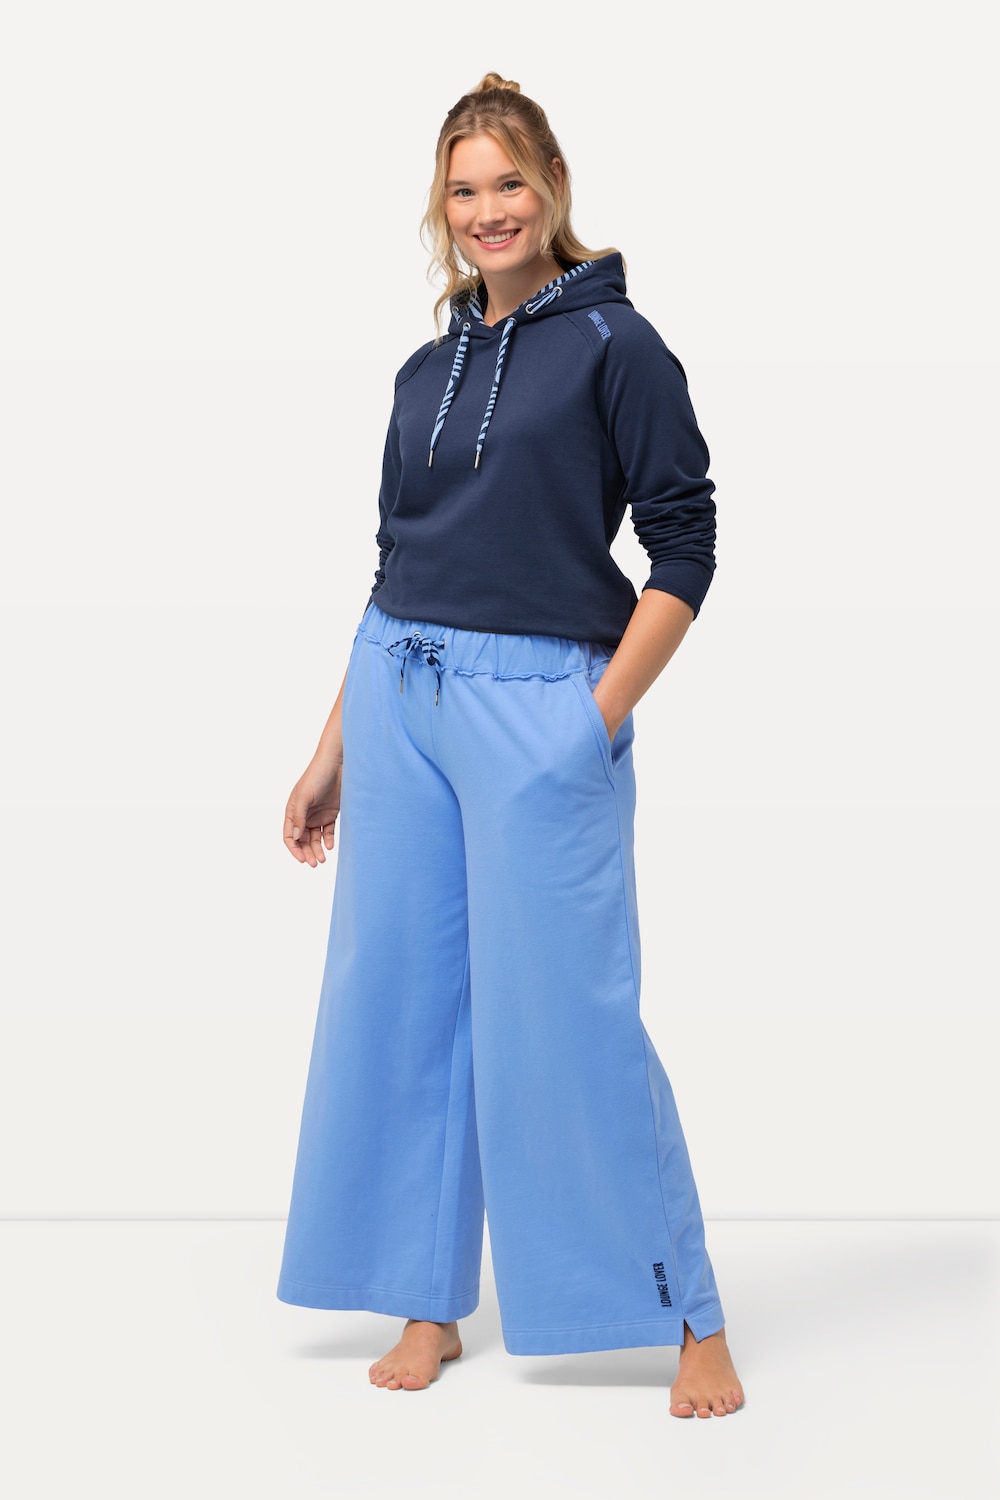 Grote Maten Loungewear-broek, Dames, blauw, Maat: 62/64, Katoen/Polyester, Ulla Popken